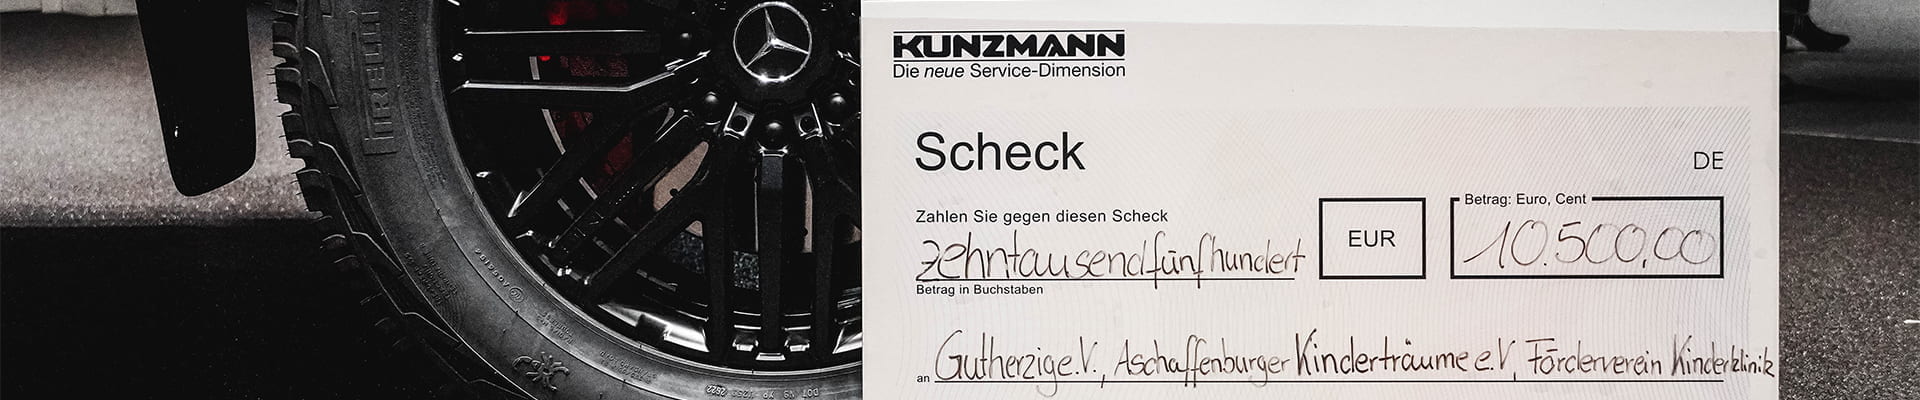 Mercedes-Benz G-Klasse 4x4 VIP Event Spendenübergabe